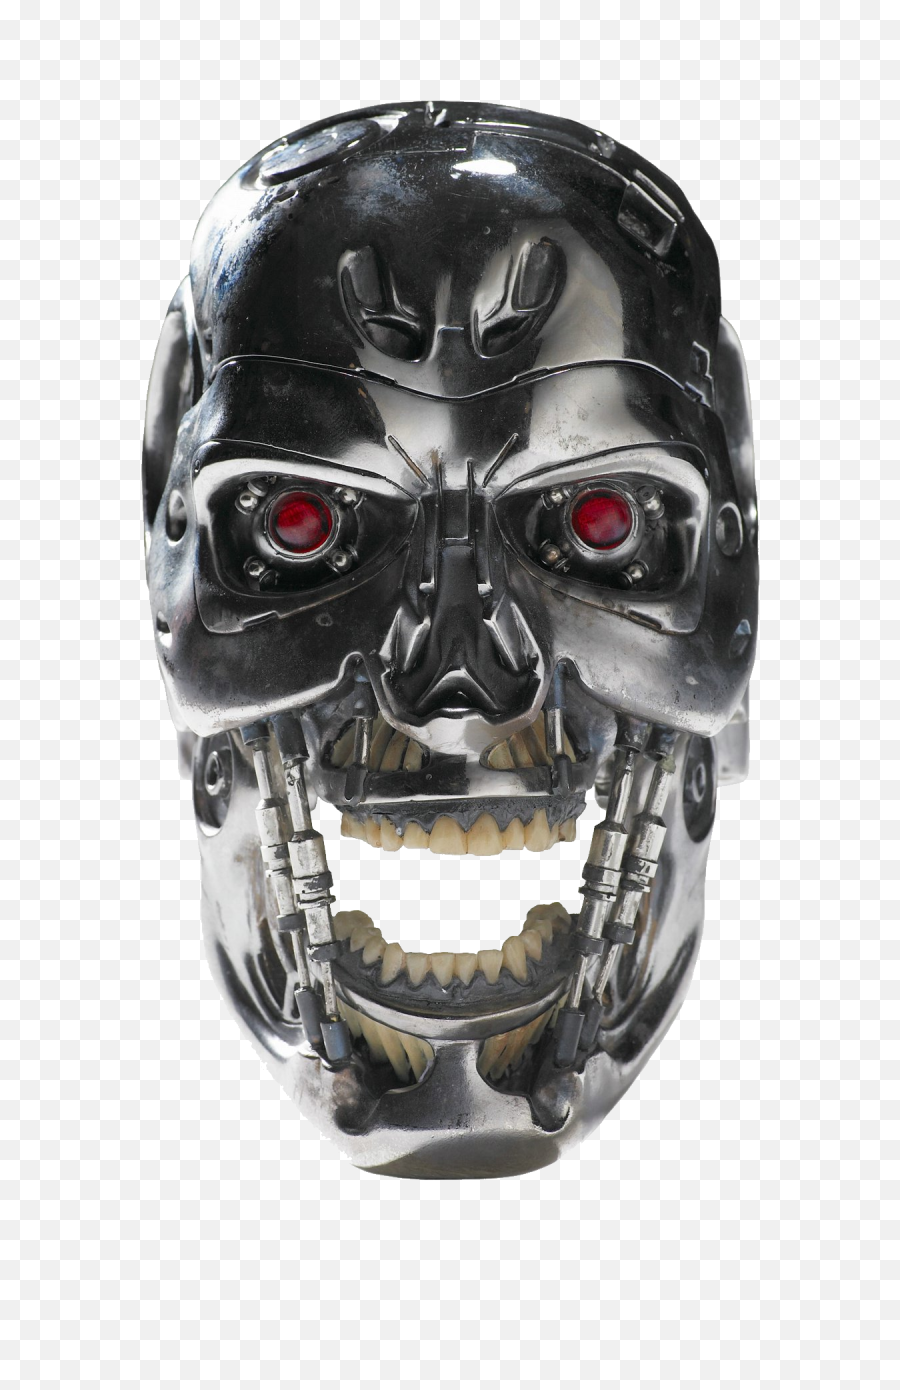 Terminator Skull Png Image - Purepng Free Transparent Cc0 Terminator Half Face Png,Skull Face Png